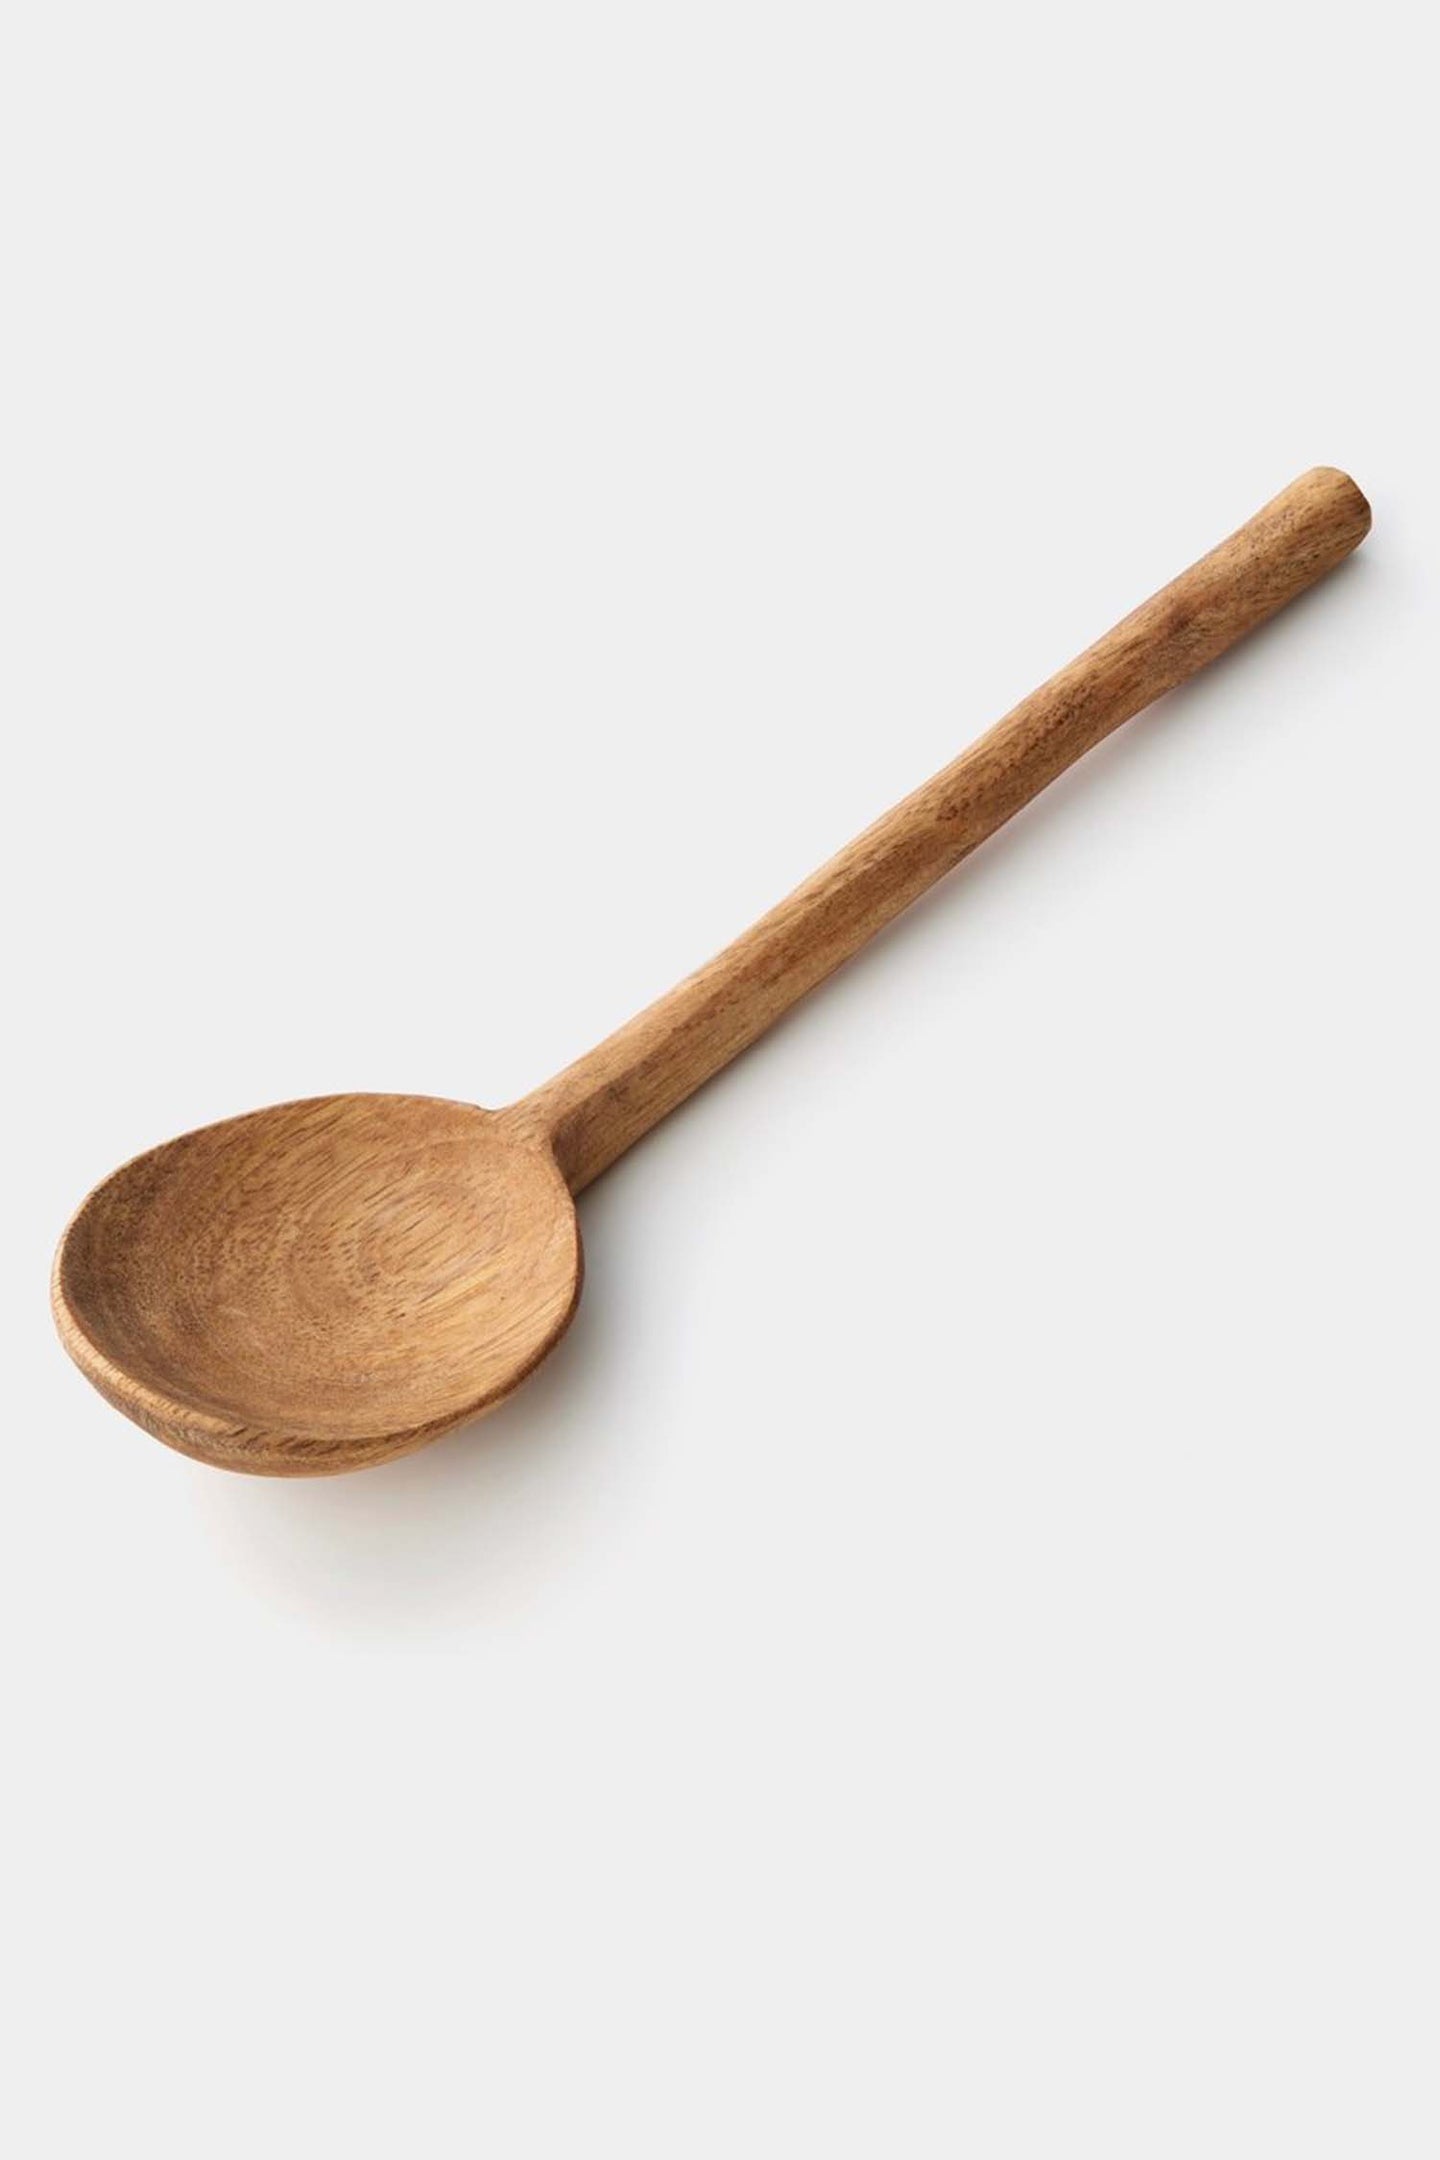 Mango wood spoon: Large